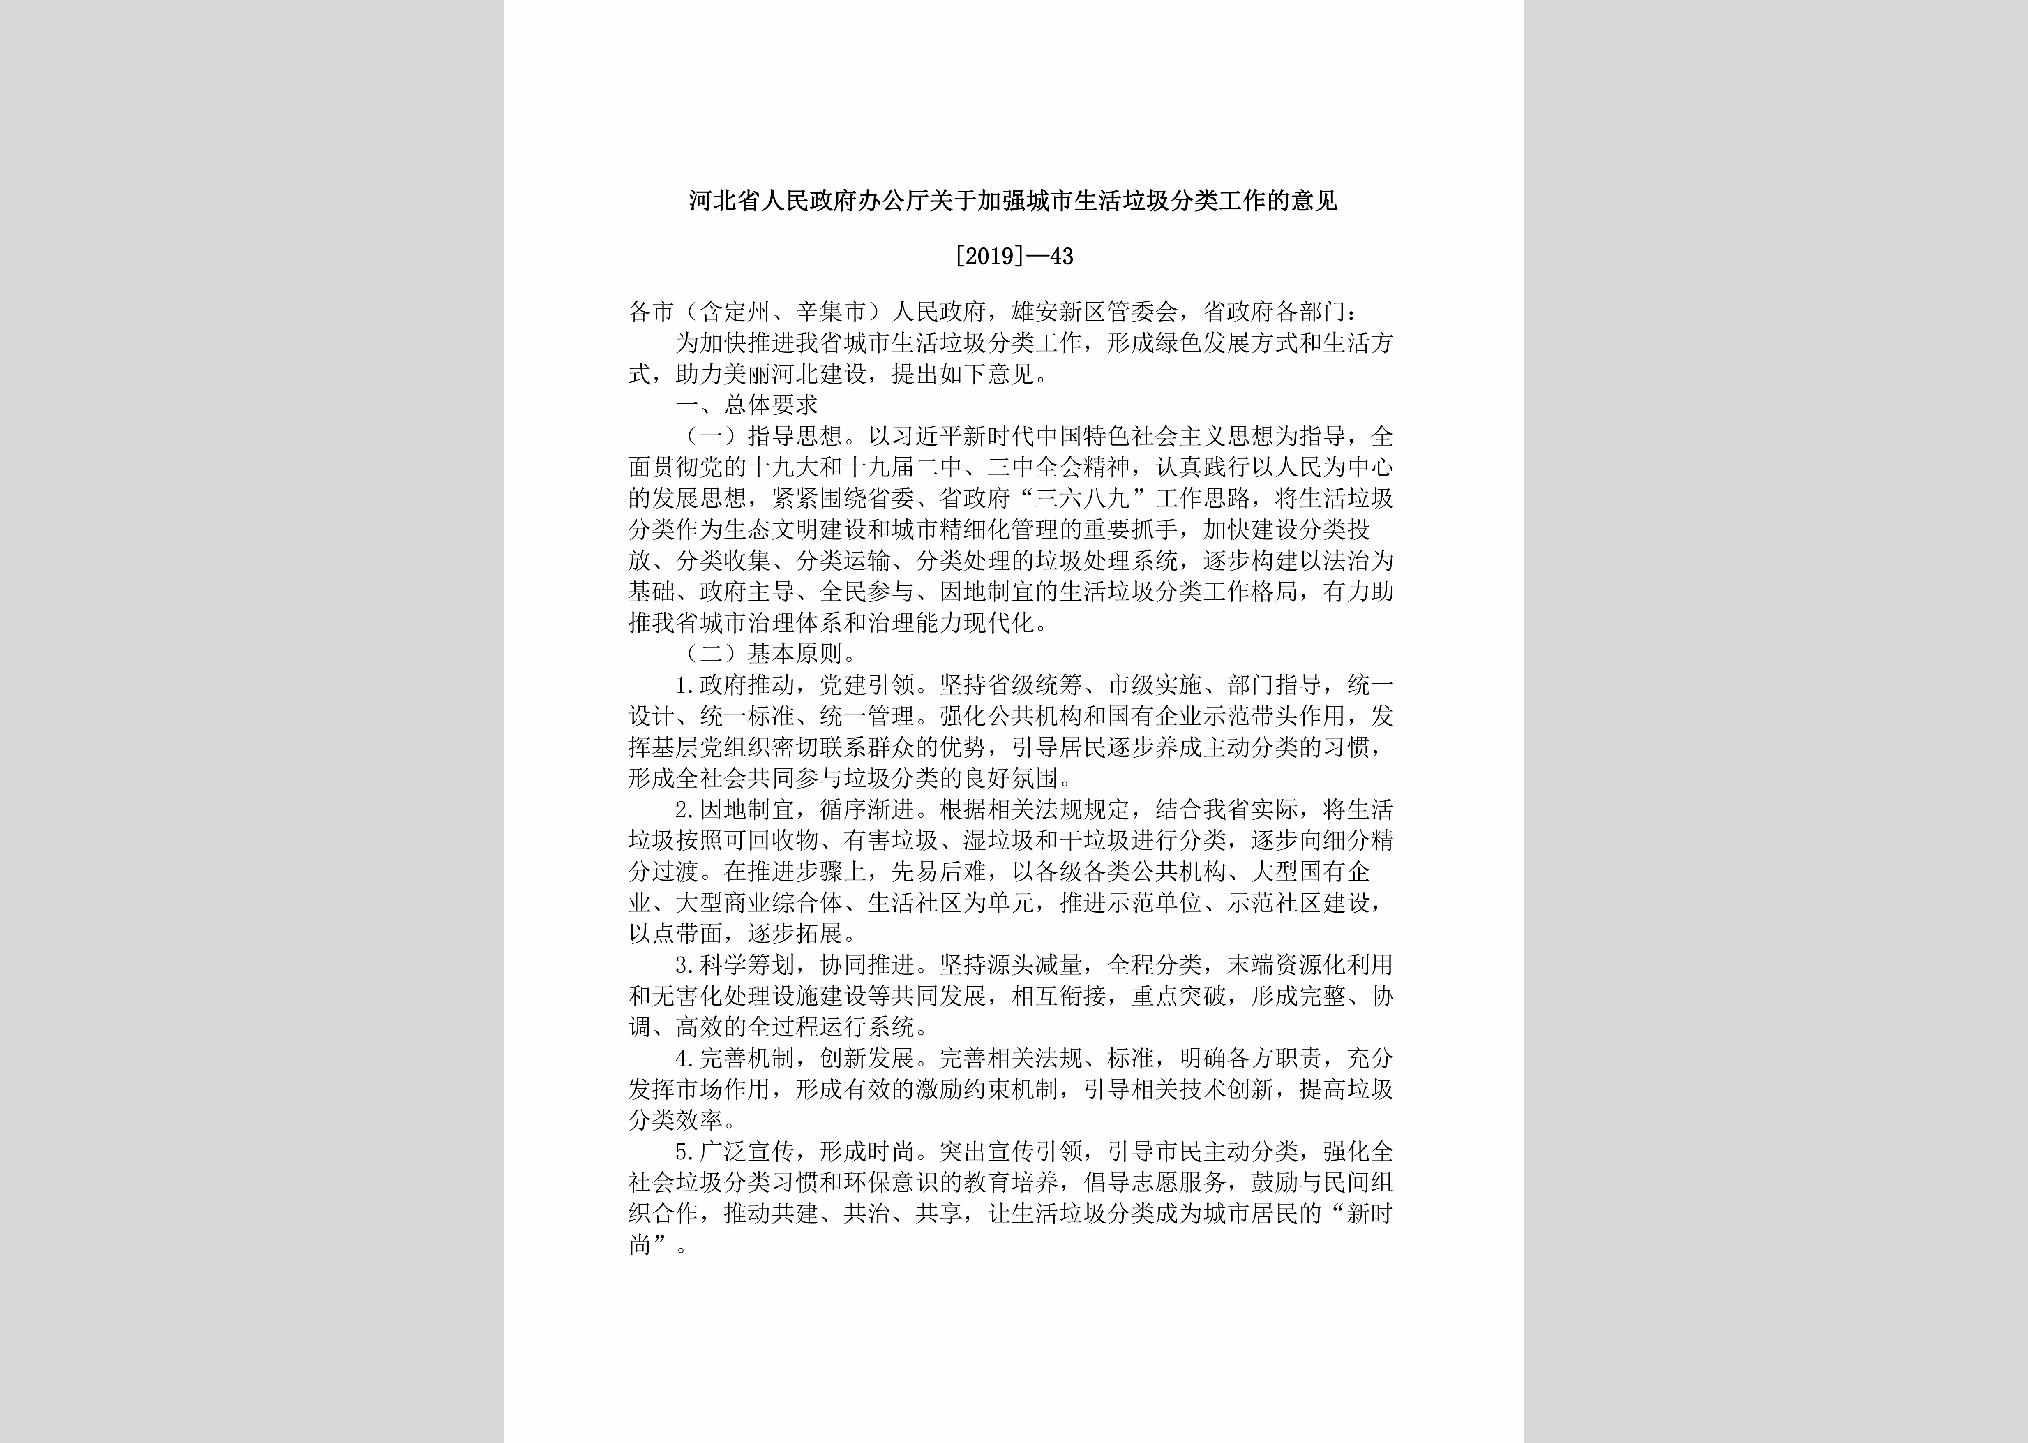 [2019]-43：河北省人民政府办公厅关于加强城市生活垃圾分类工作的意见